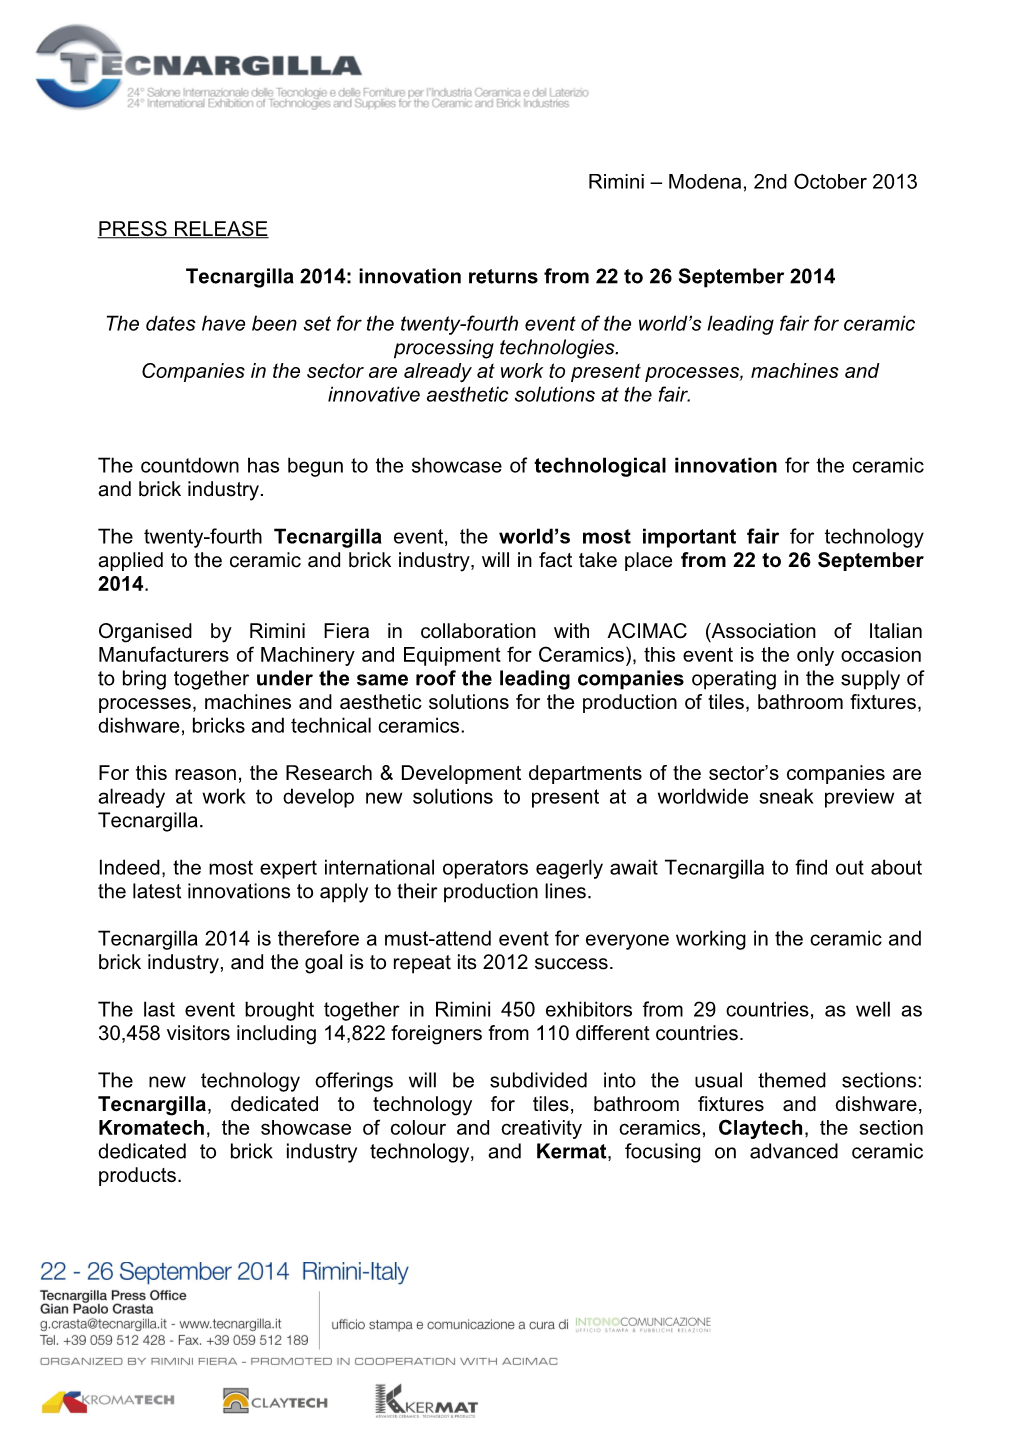 Tecnargilla 2014: Innovation Returns from 22 to 26 September 2014